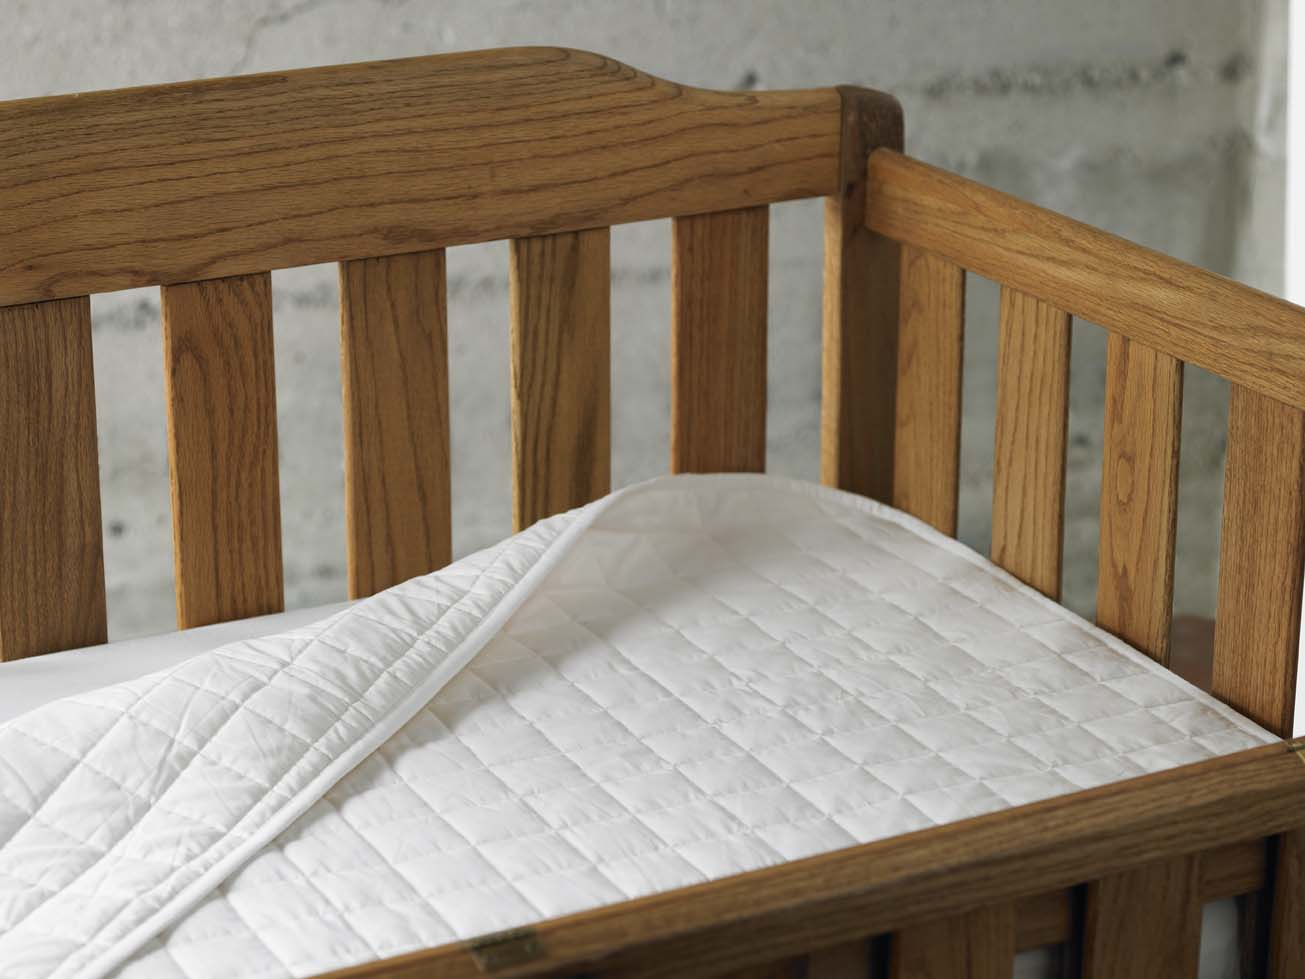 crib mattress pad too soft